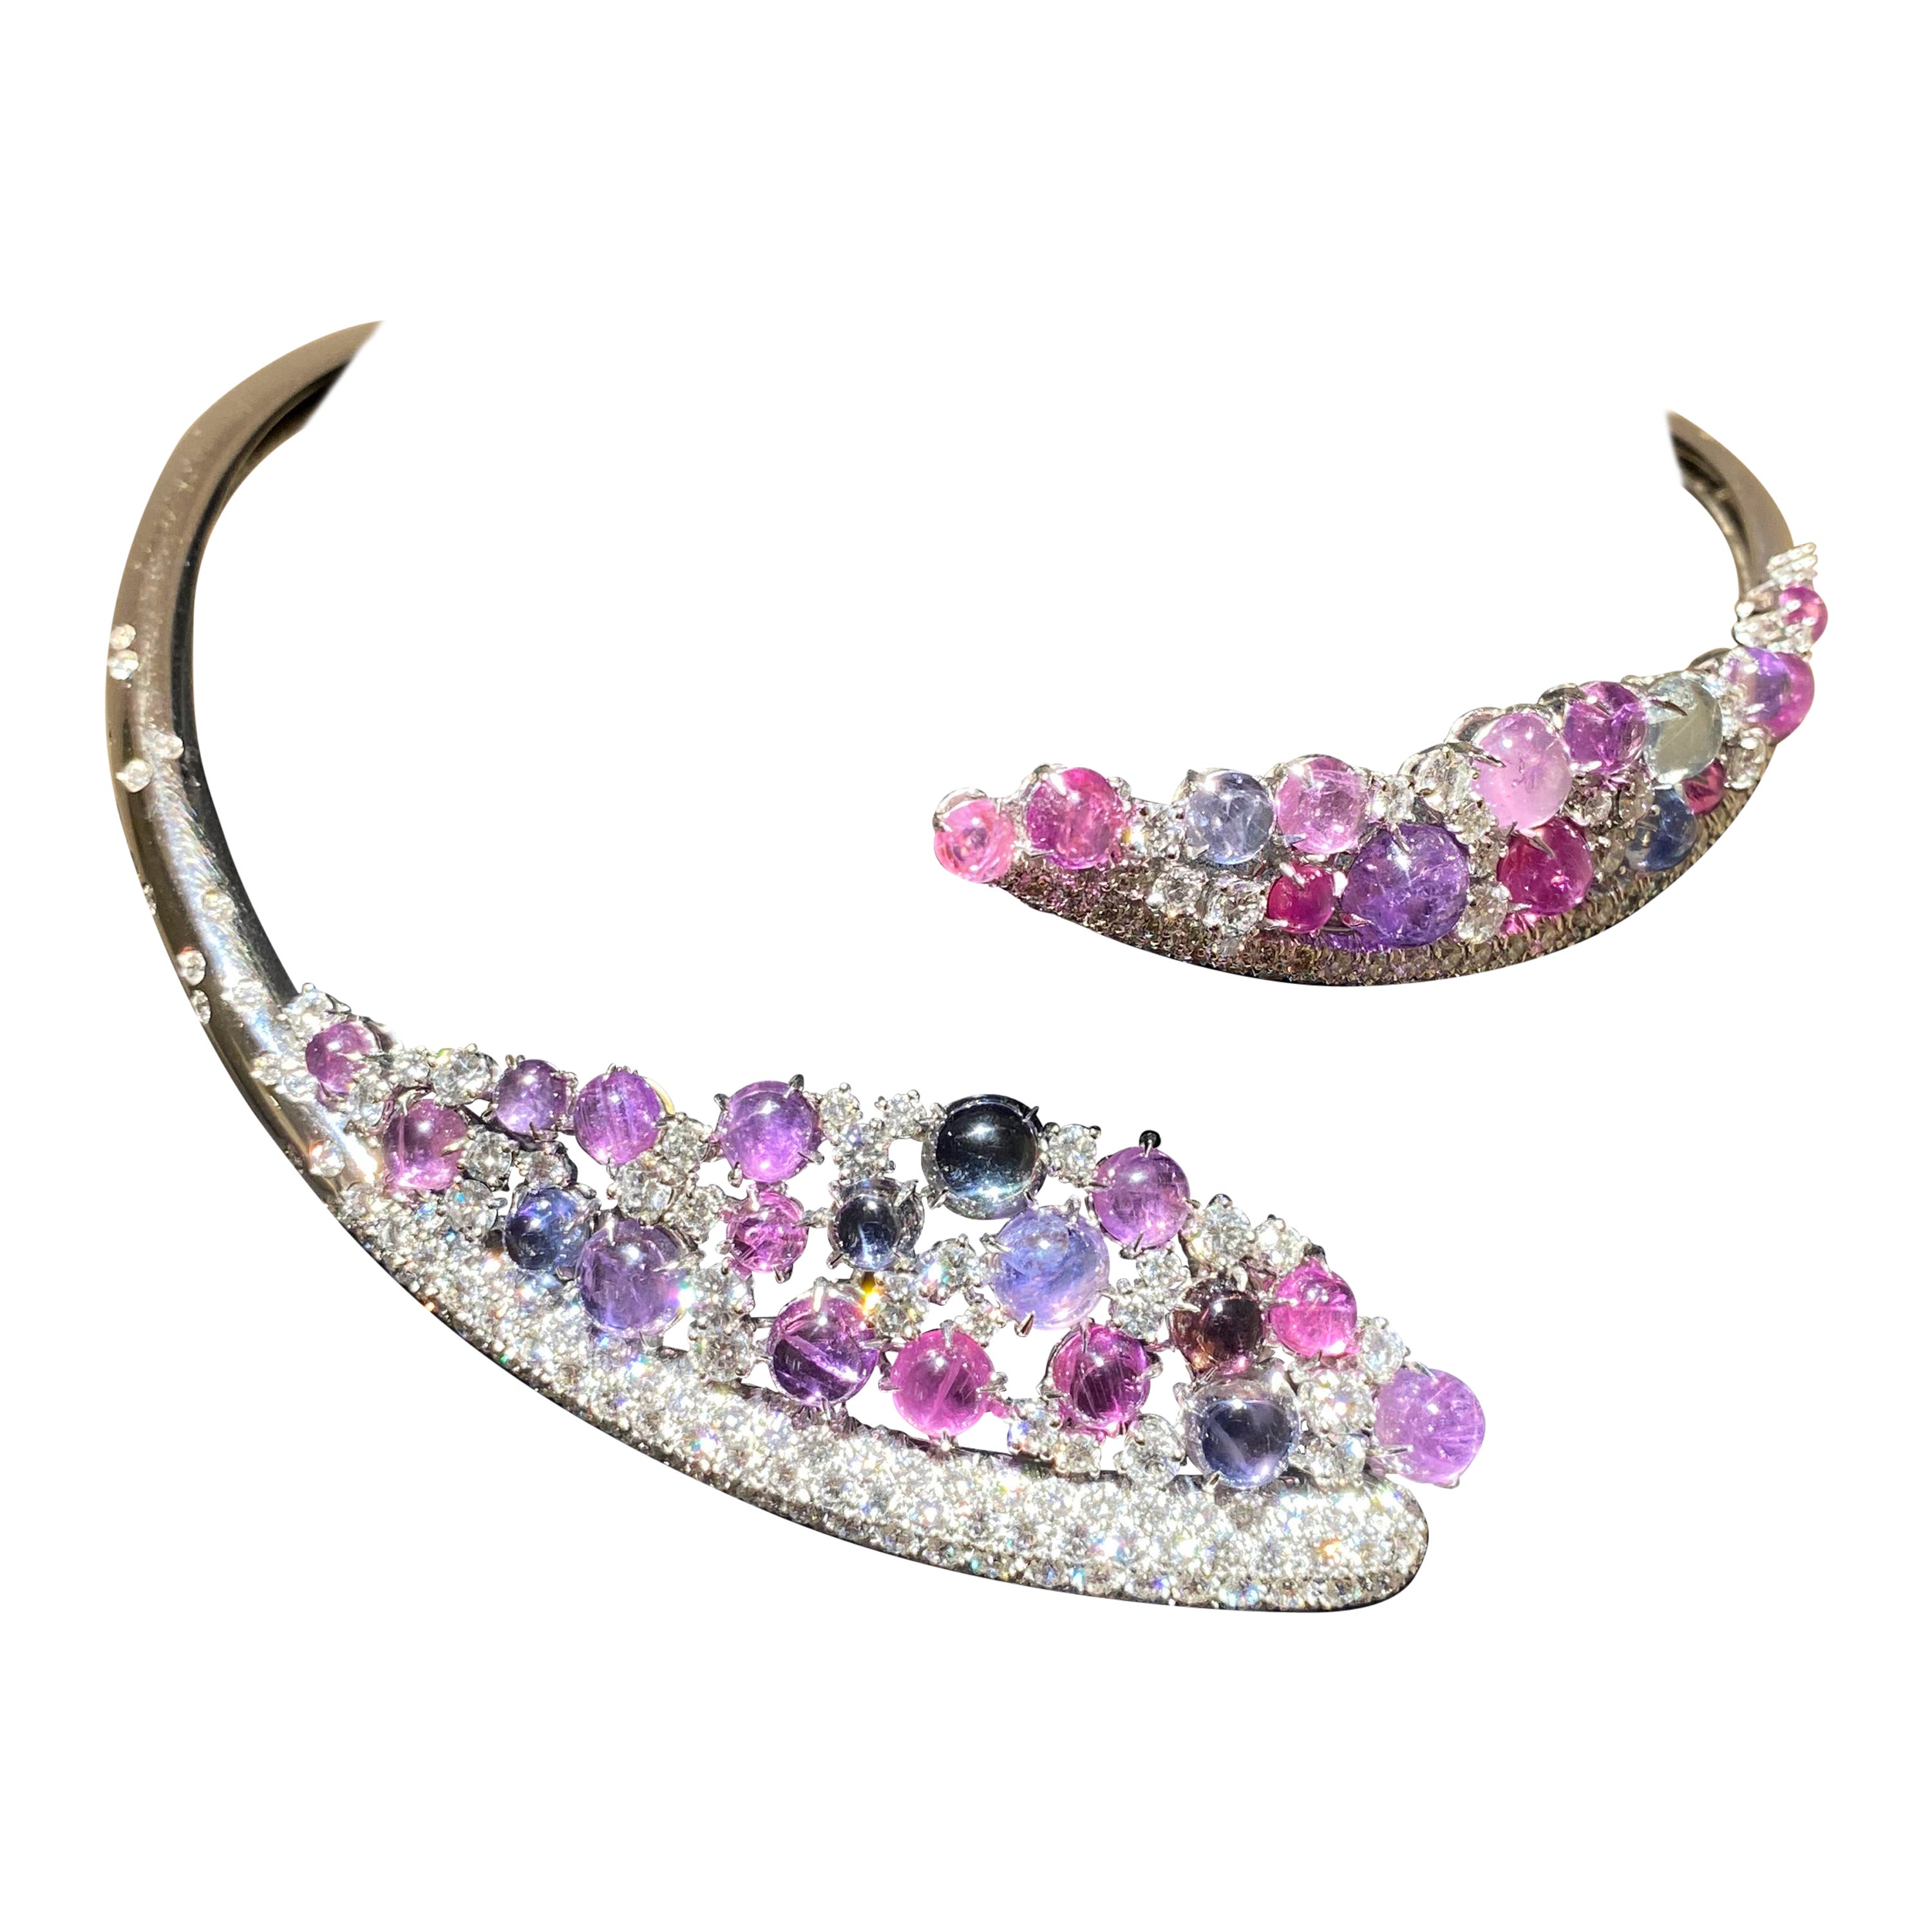 Diese exquisite Halskette, entworfen von dem renommierten italienischen Juwelier Scavia, ist eine bezaubernde Mischung aus Verspieltheit und Raffinesse. Das atemberaubende Arrangement aus polychromen Cabochon-Saphiren mit glattem Rundschliff bildet